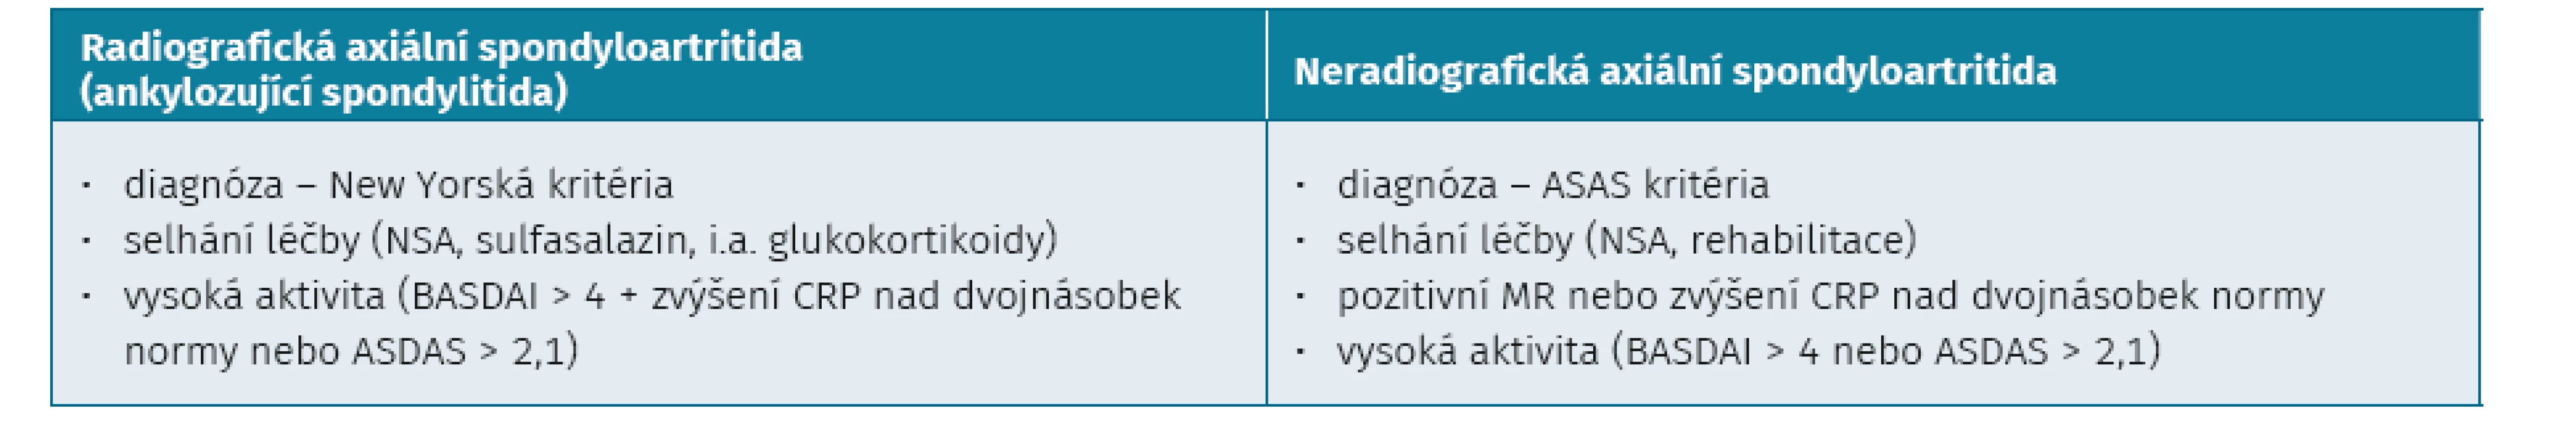 Kritéria pro zahájení biologické léčby u axiálních spondyloartritid (ČRS)